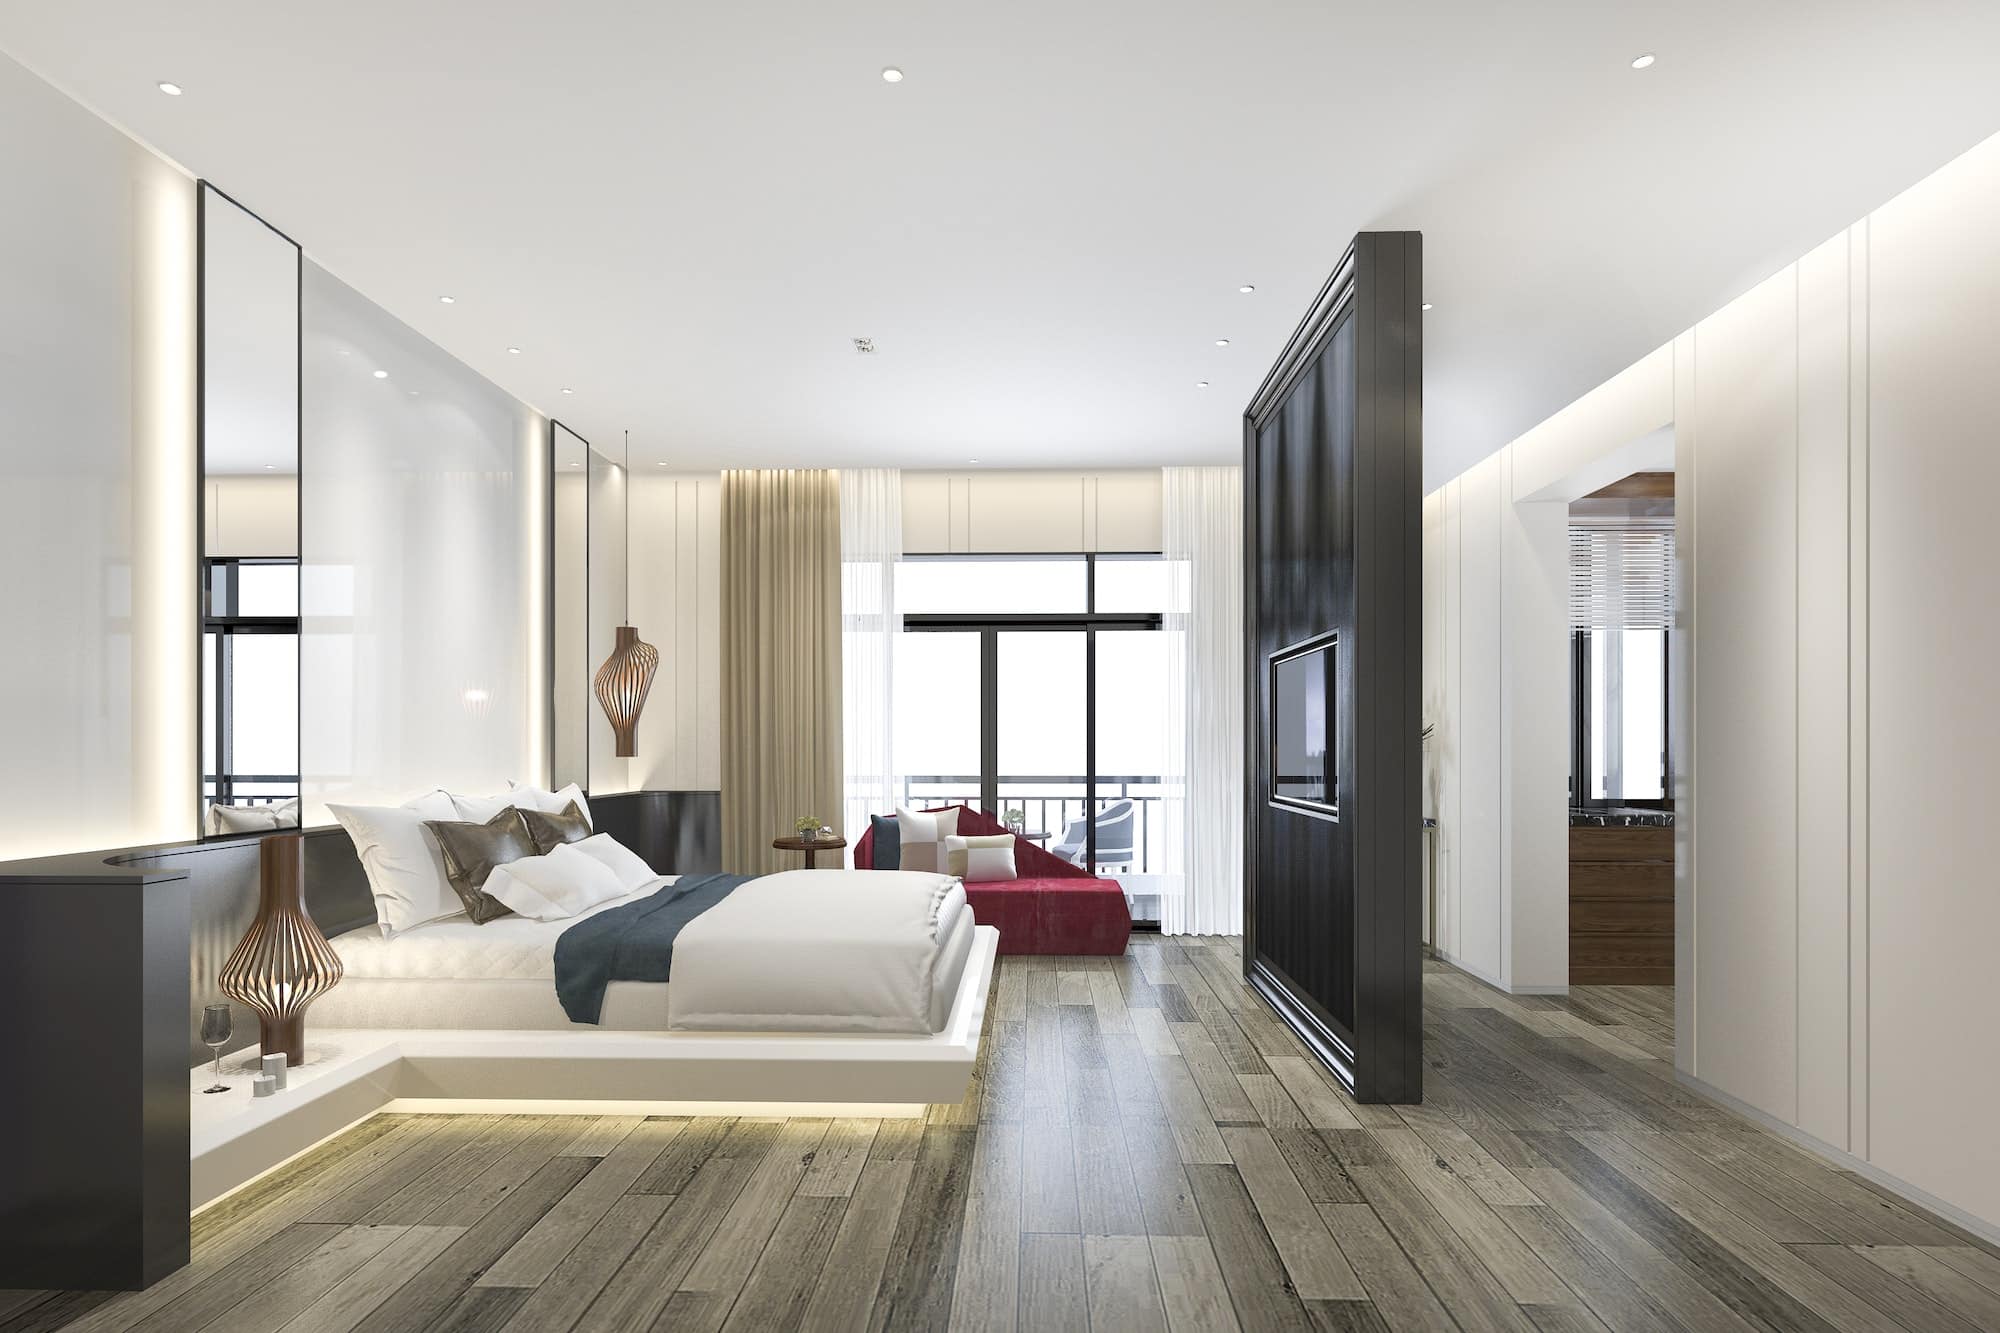 Joachim Schmitt Photography Immobilienfotografie Schöne Luxus Schlafzimmer Suite im Hotel mit Fernseher und rotem Sofa